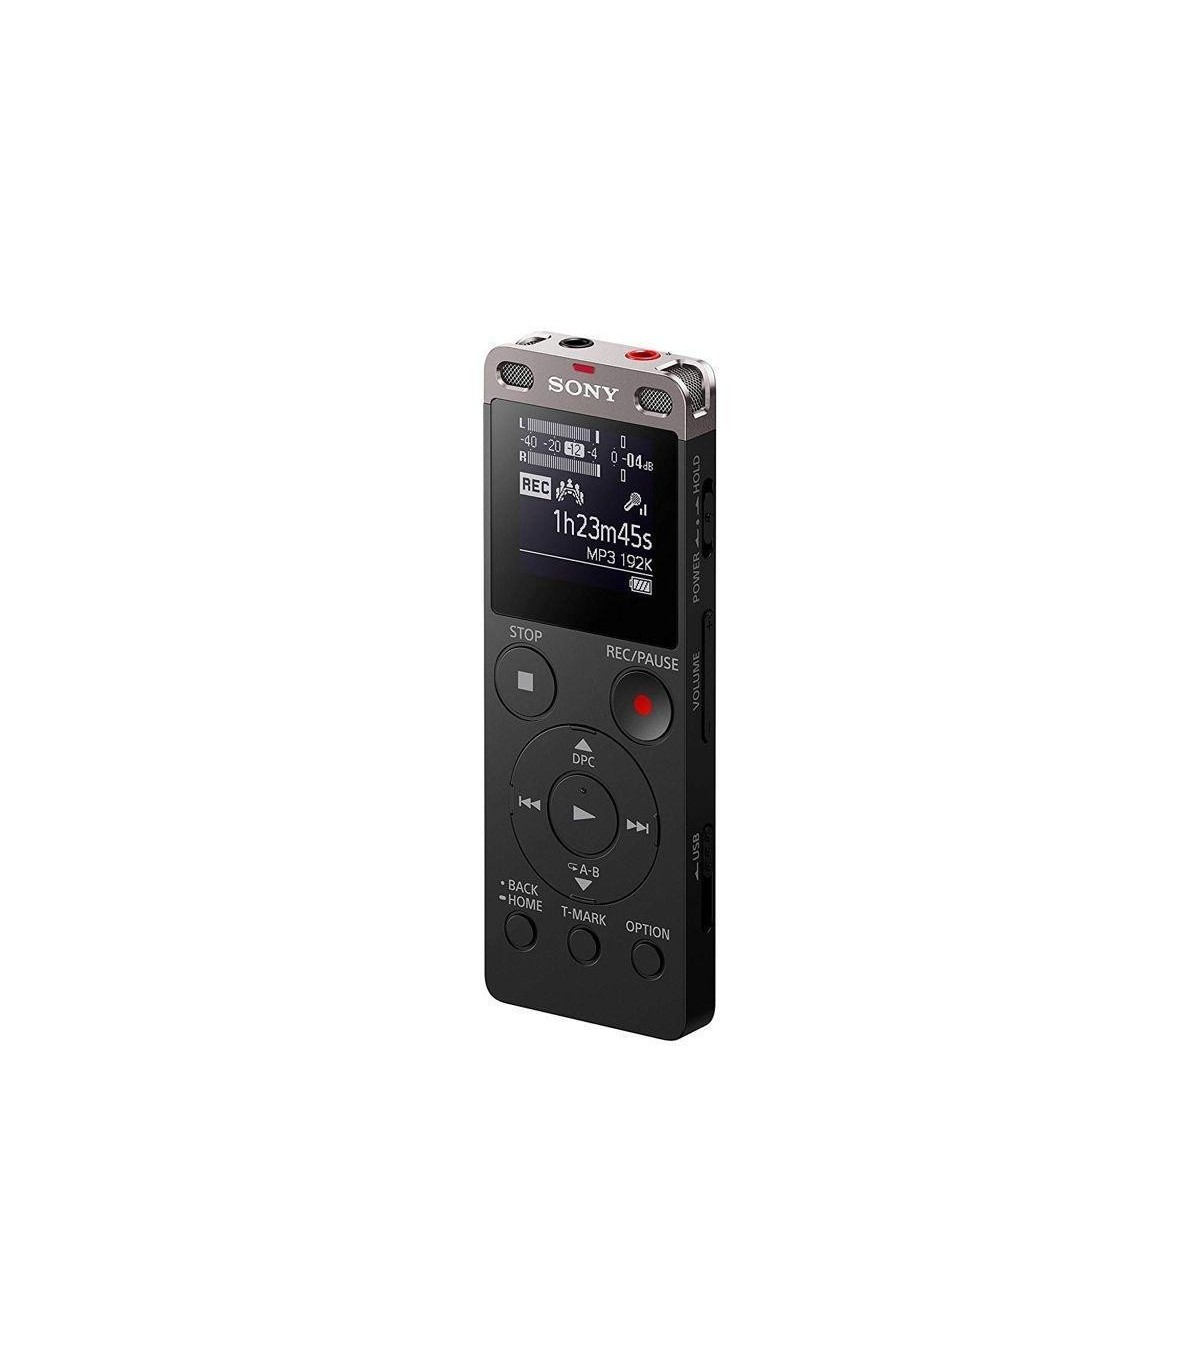 Grabadora de voz digital Sony estéreo ICDUX560BLK con USB integrado -  Grabadoras de Voz - Camaras de Seguridad Y Control de Acceso